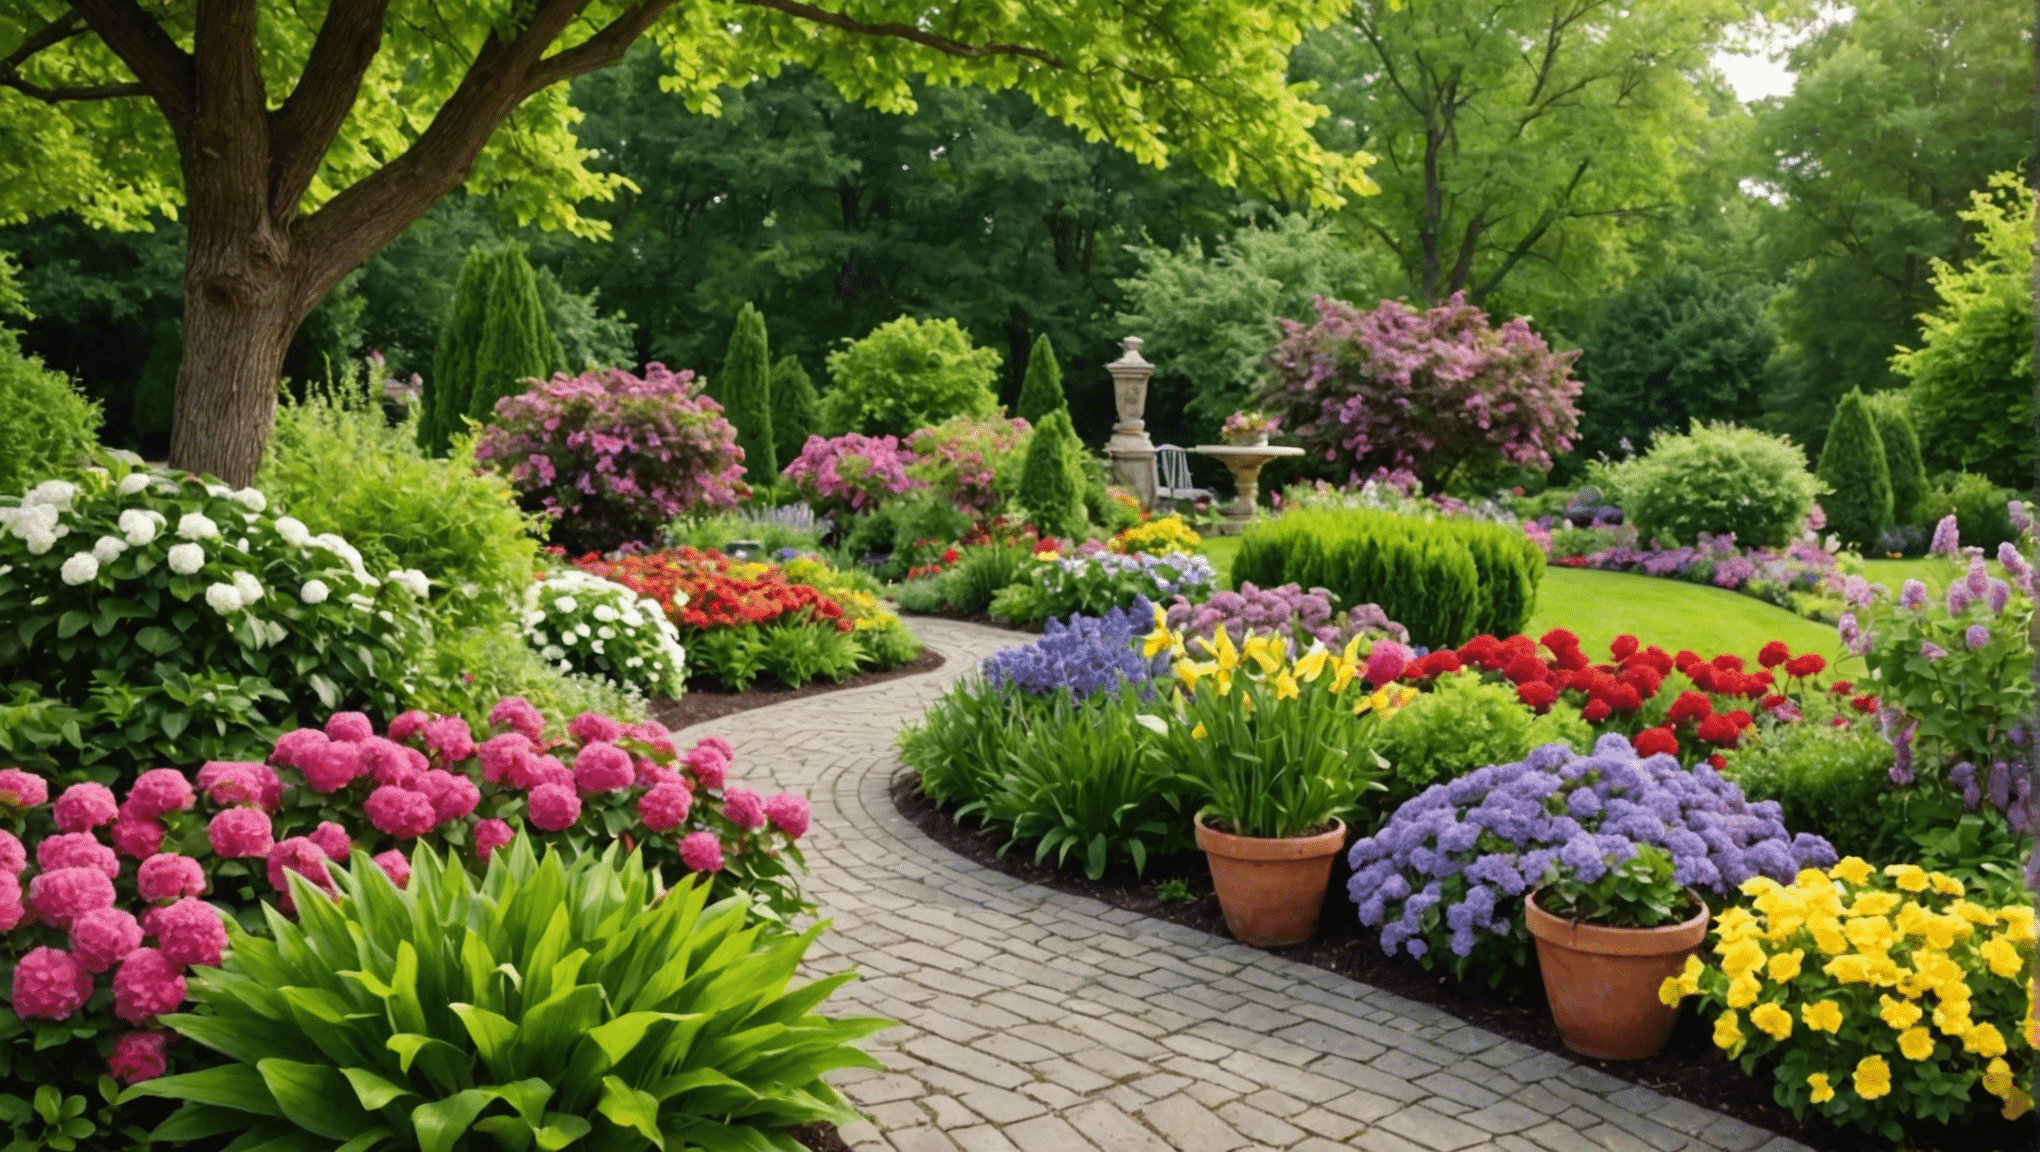 Entdecken Sie die besten Gartenideen für den Sommer, um Ihren Außenbereich aufzuwerten. Von farbenfrohen Blumenarrangements bis hin zu innovativen, nachhaltigen Praktiken – lassen Sie sich inspirieren, um in dieser Saison einen blühenden Garten anzulegen.